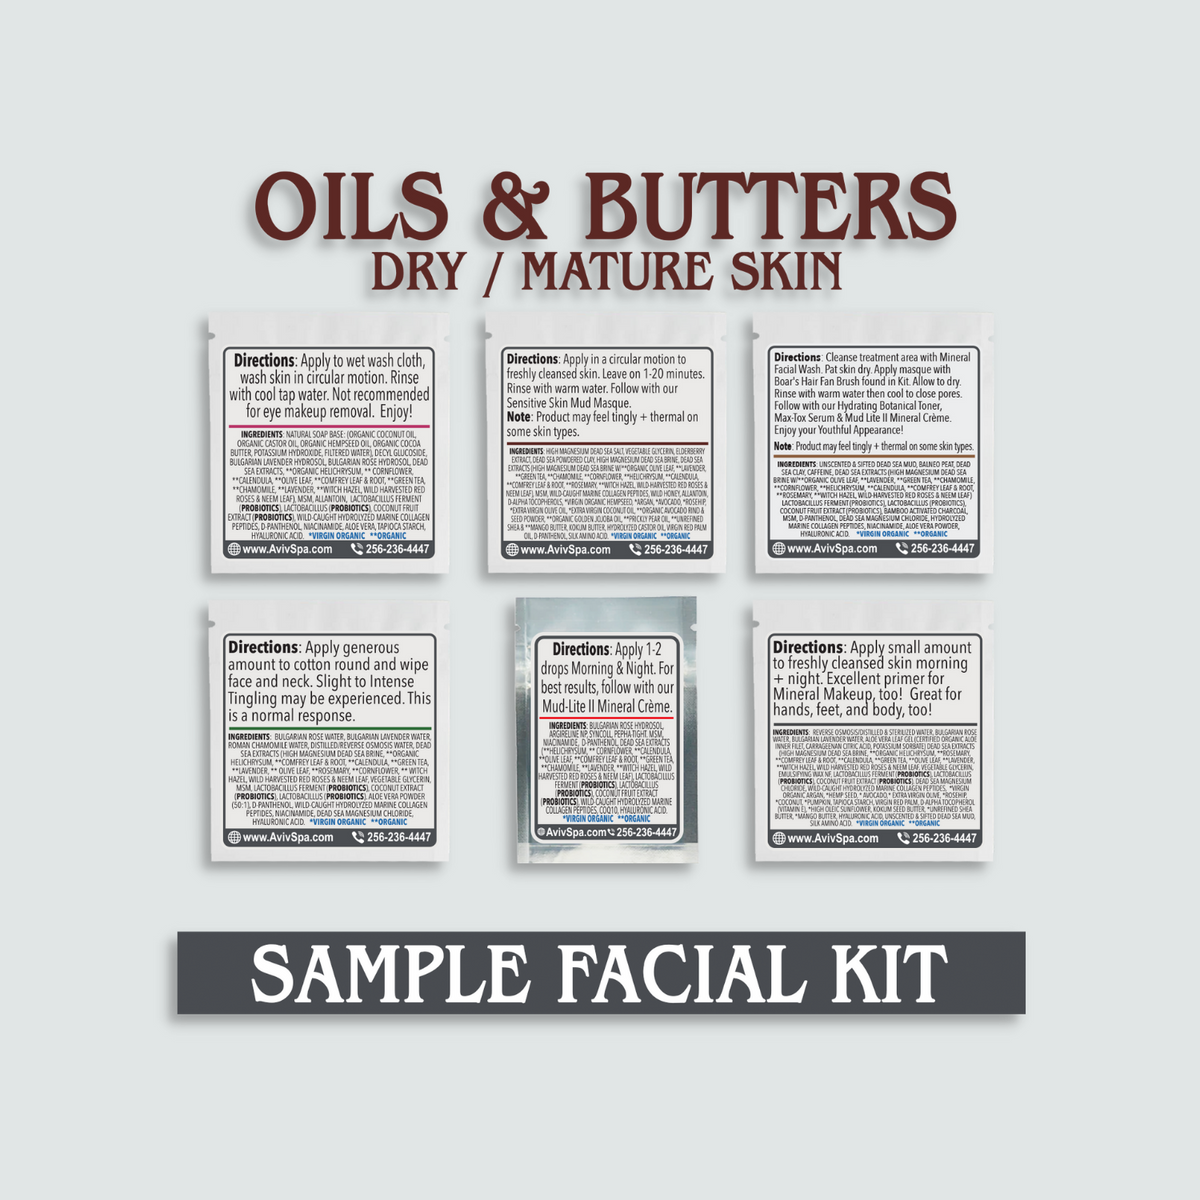 Sample Facial Kit (OILS & BUTTERS) Dry/Mature Skin & Sensitive Skin